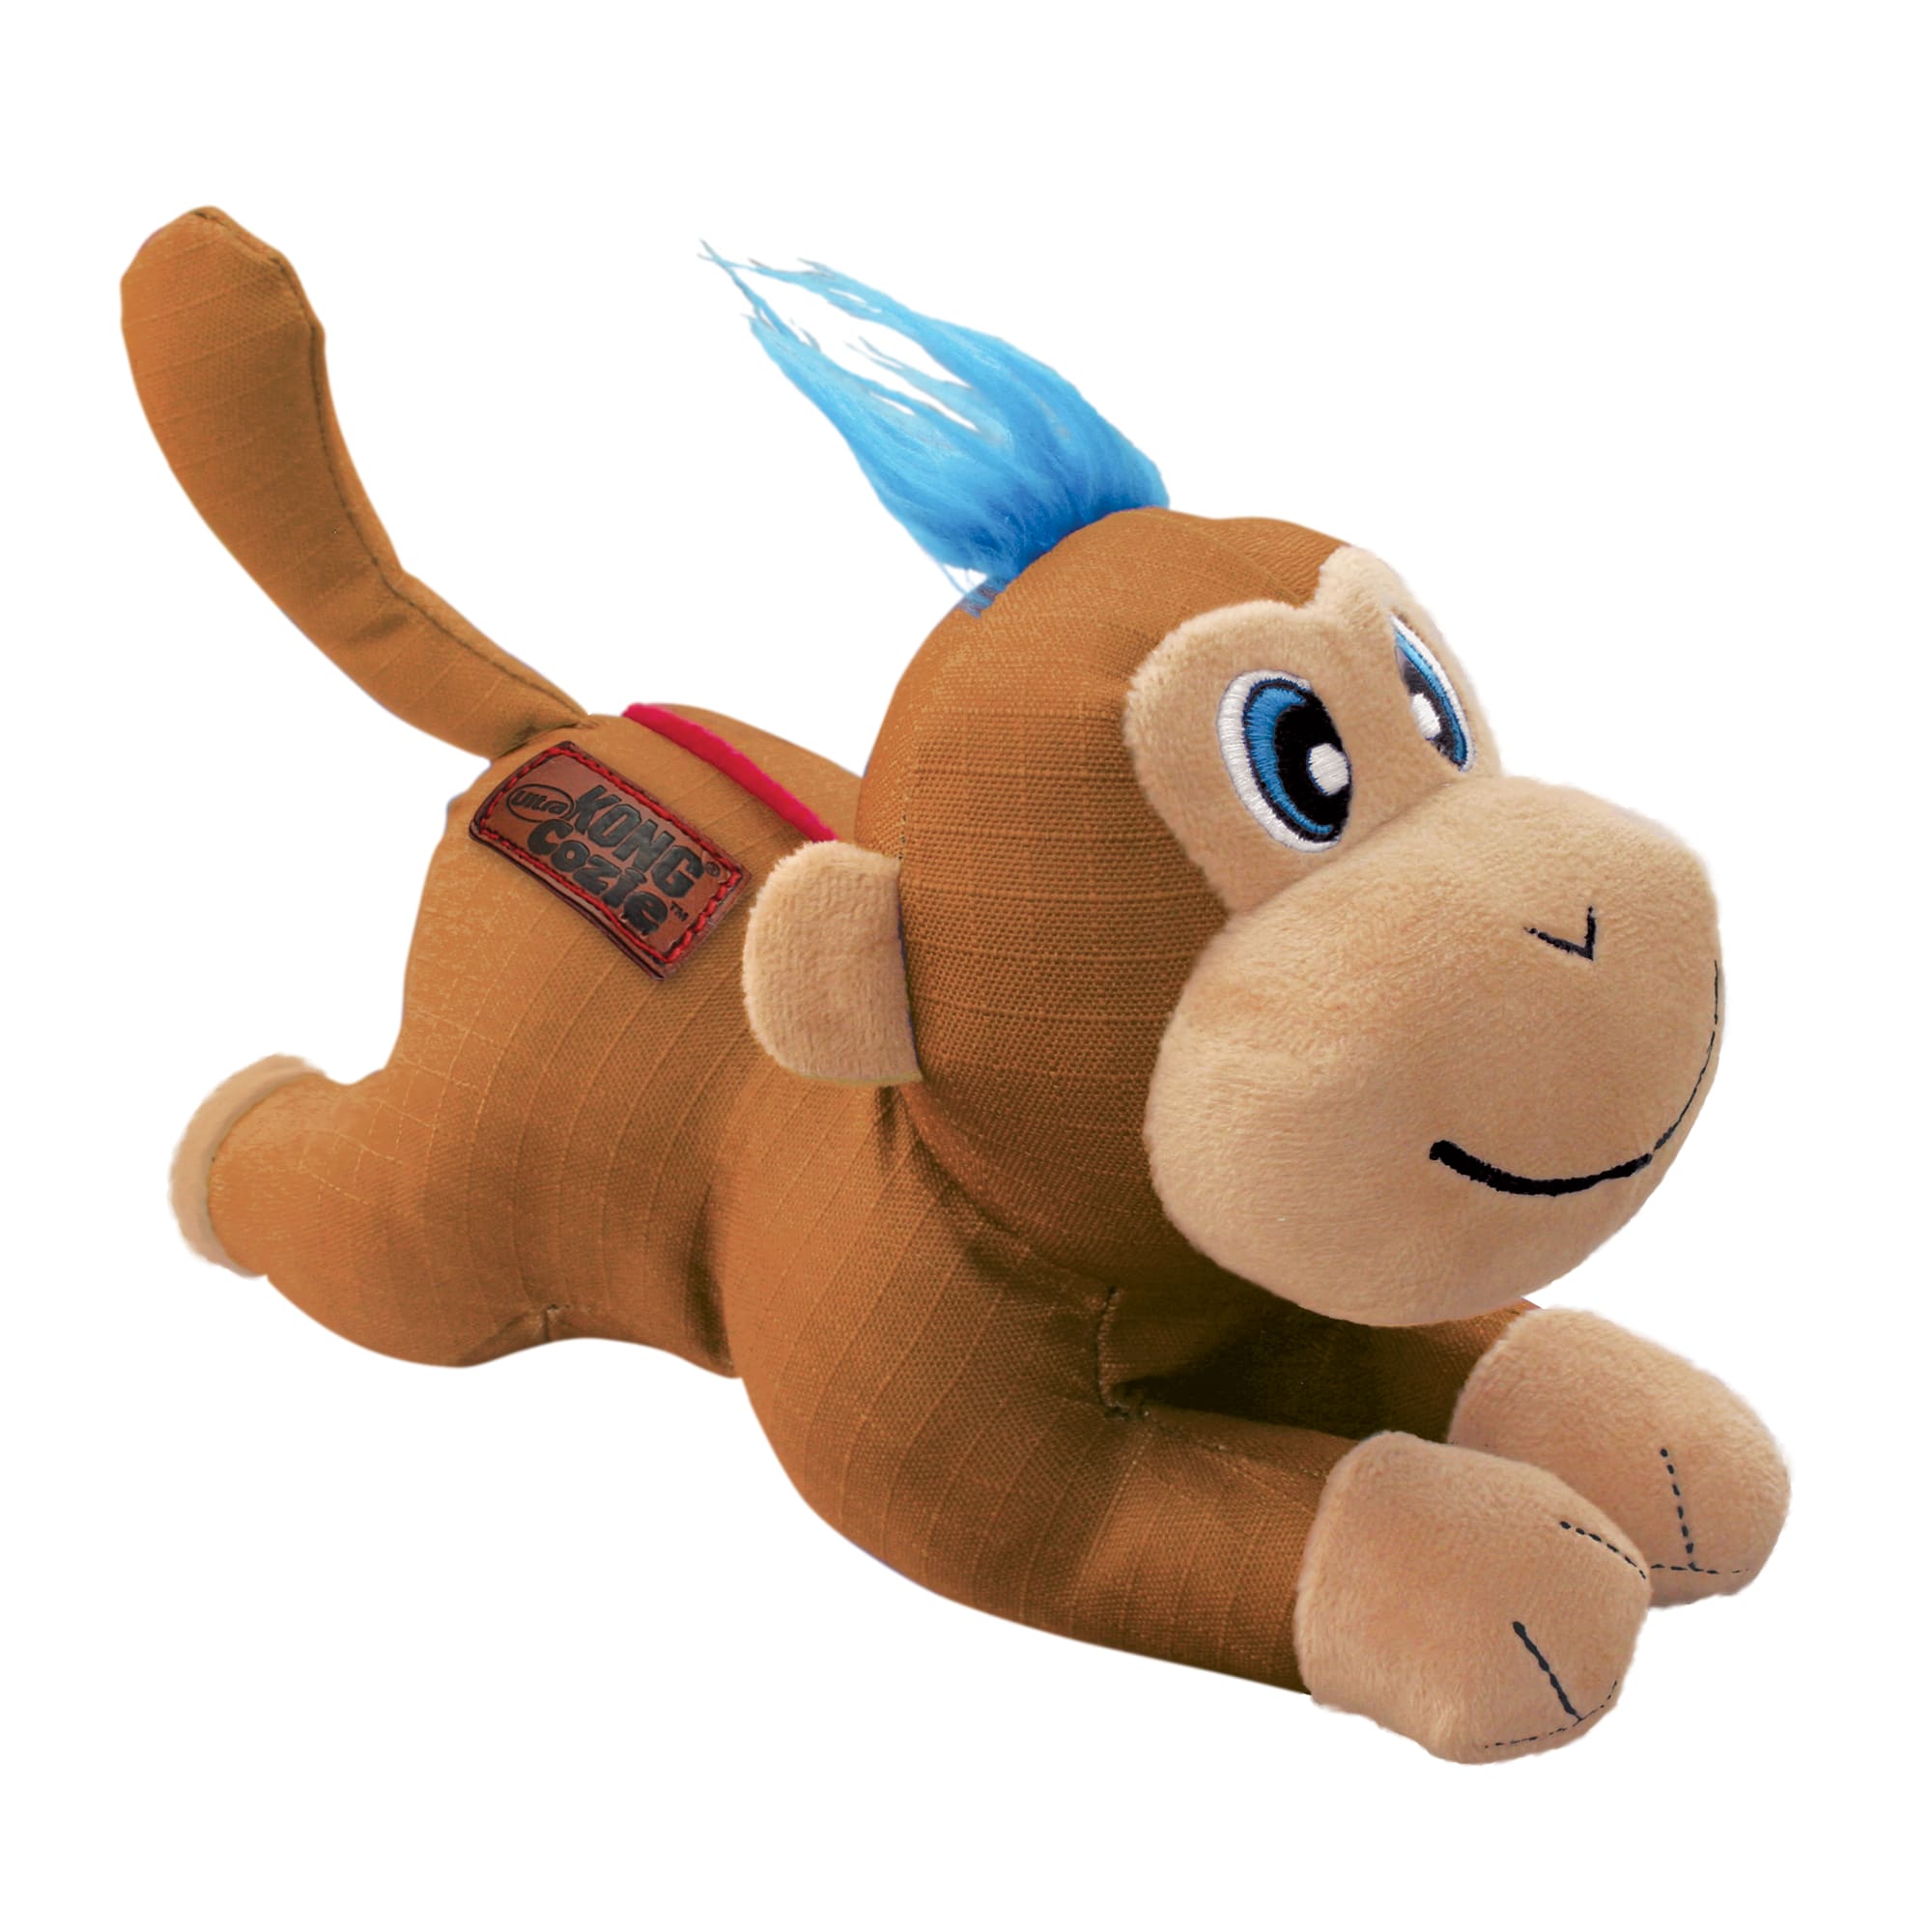 KONG Puzzlements Monkey Dog Toy, Multicolored, Large 